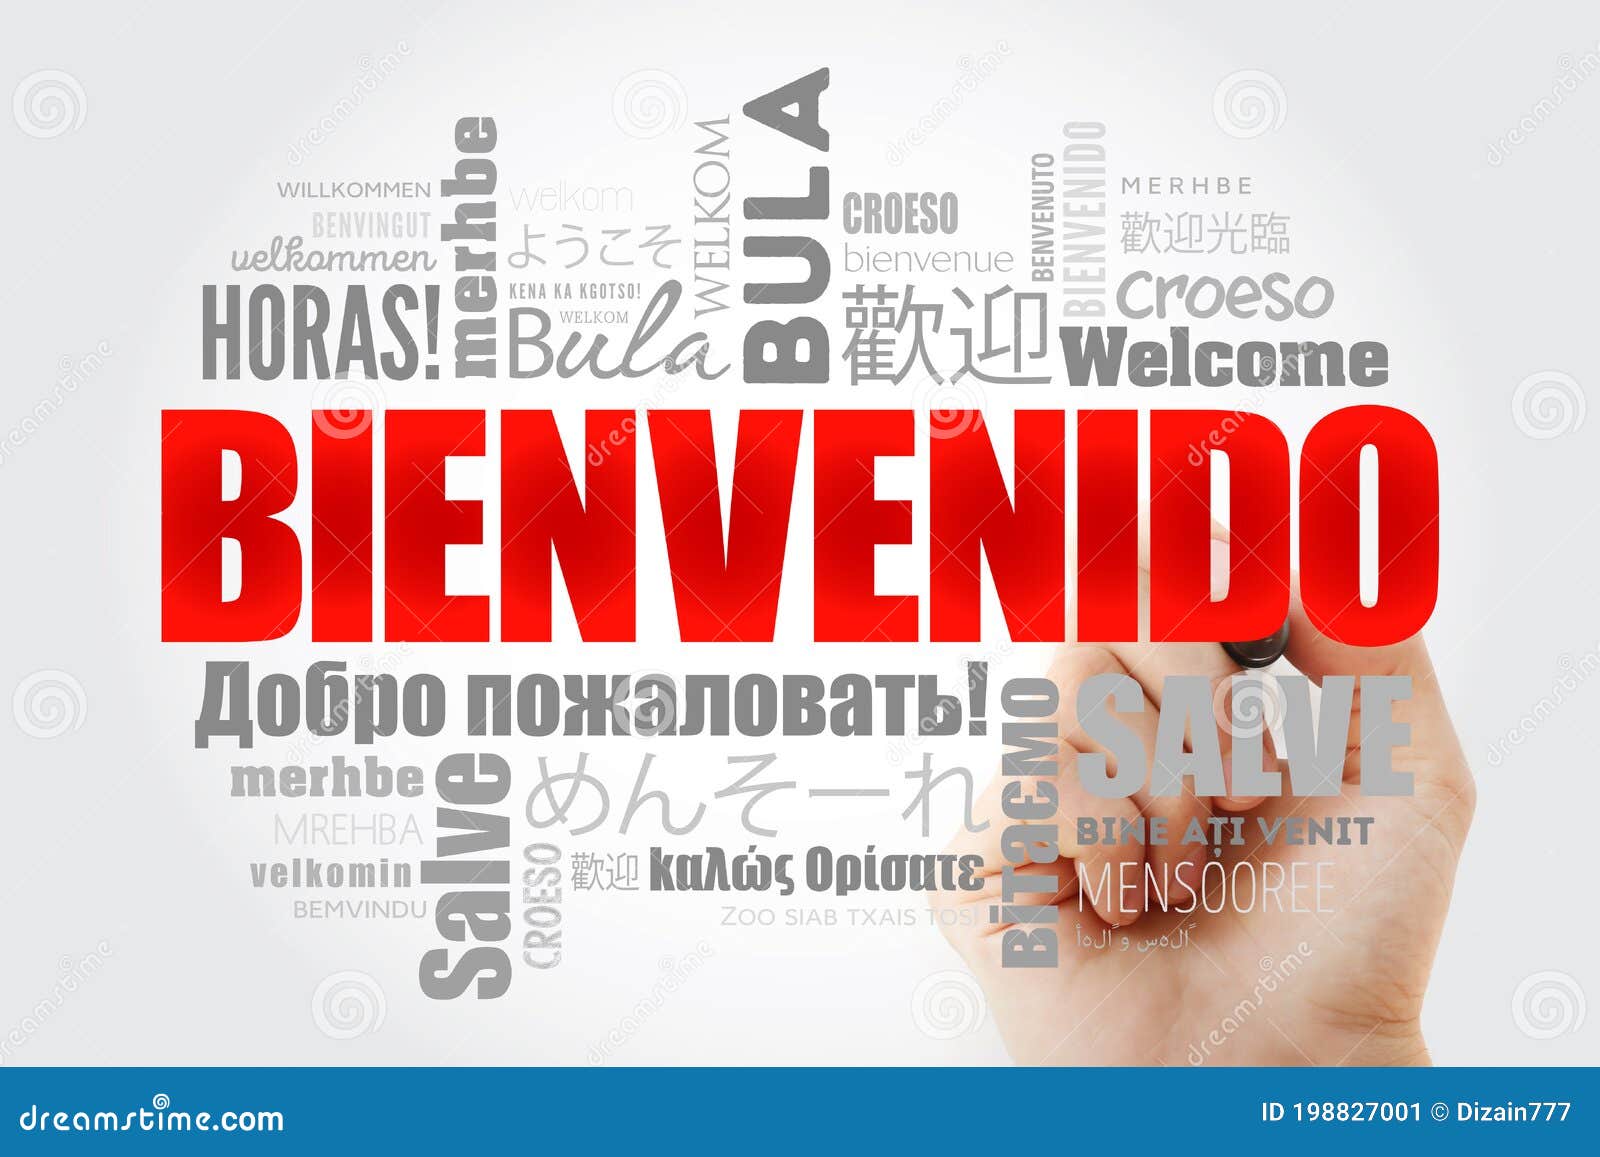 Welcome - in Spanish. Lettering. Bienvenido. | Sticker